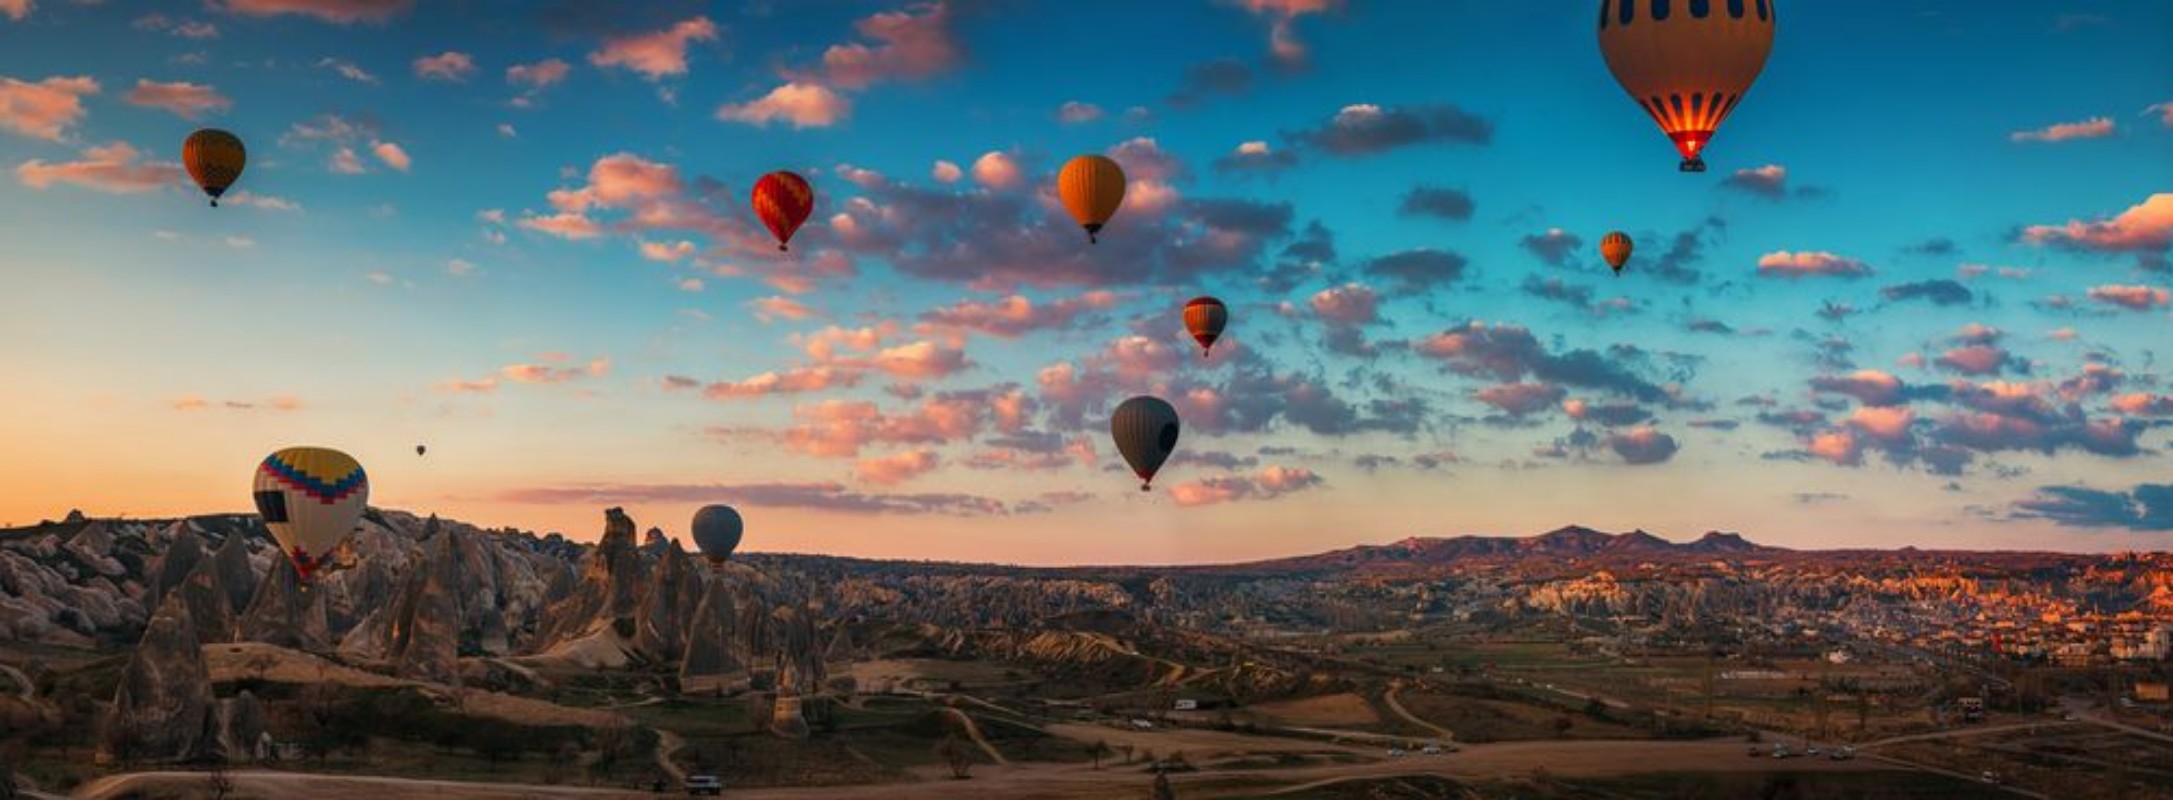 Image de Hot Air Ballons